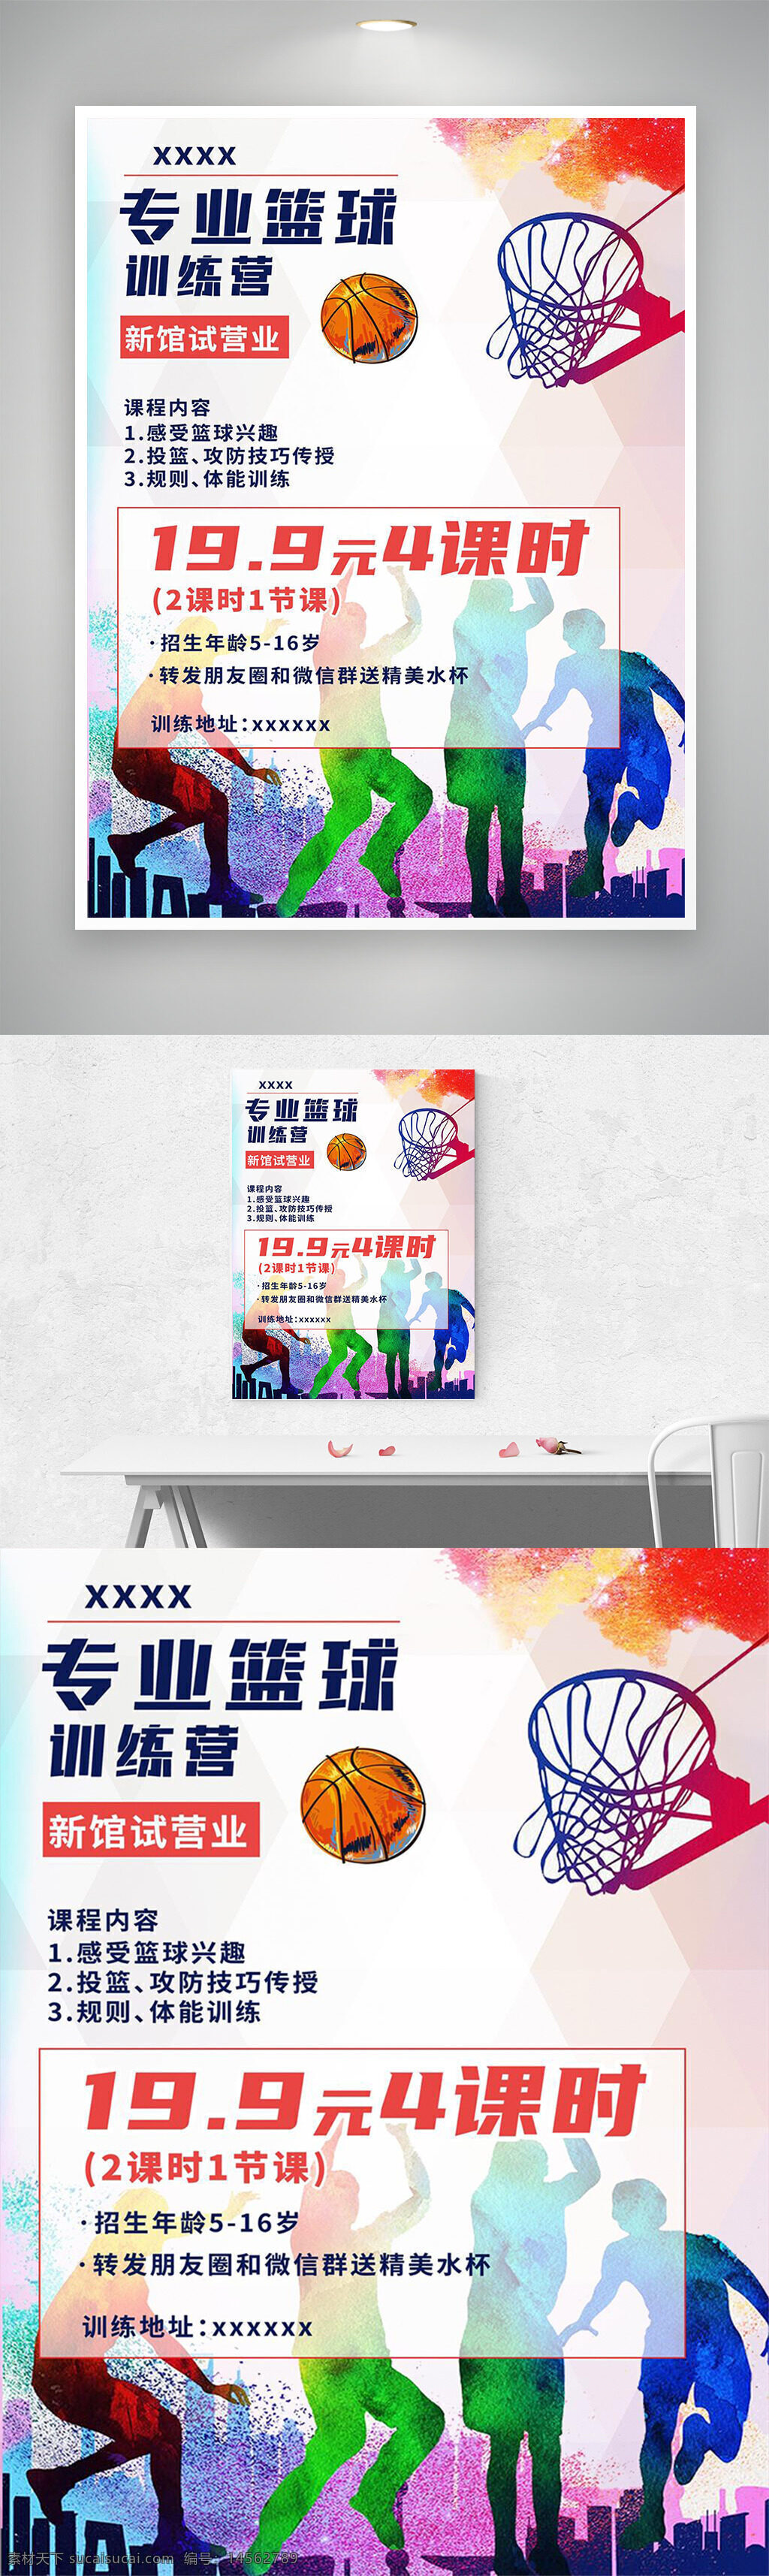 篮球 海报 宣传 教育 活动 设计 广告设计